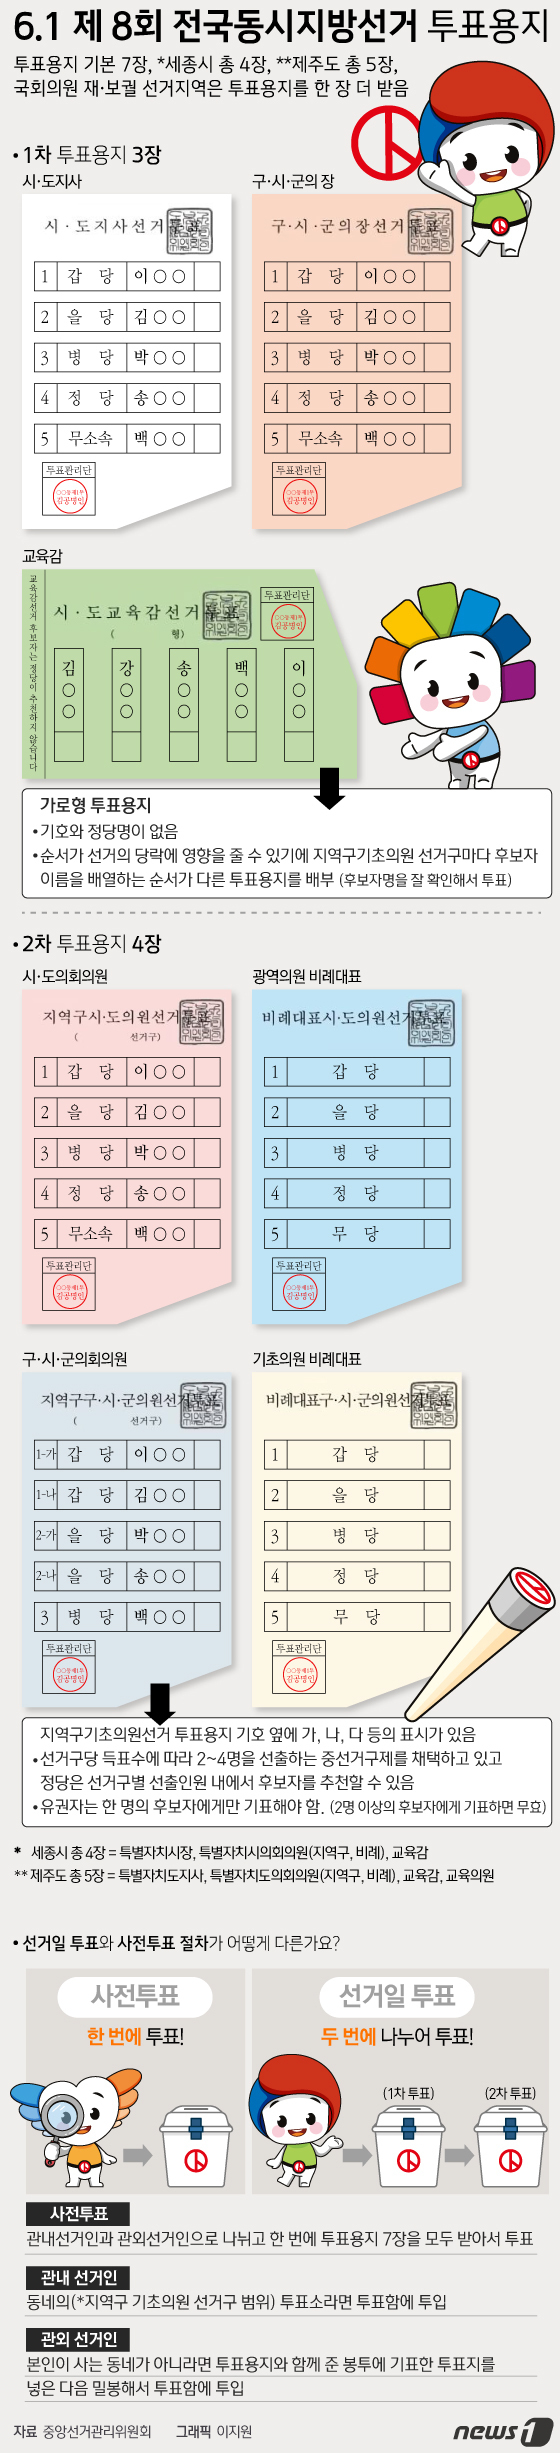 [그래픽뉴스] 6.1 제 8회 전국동시지방선거 투표용지